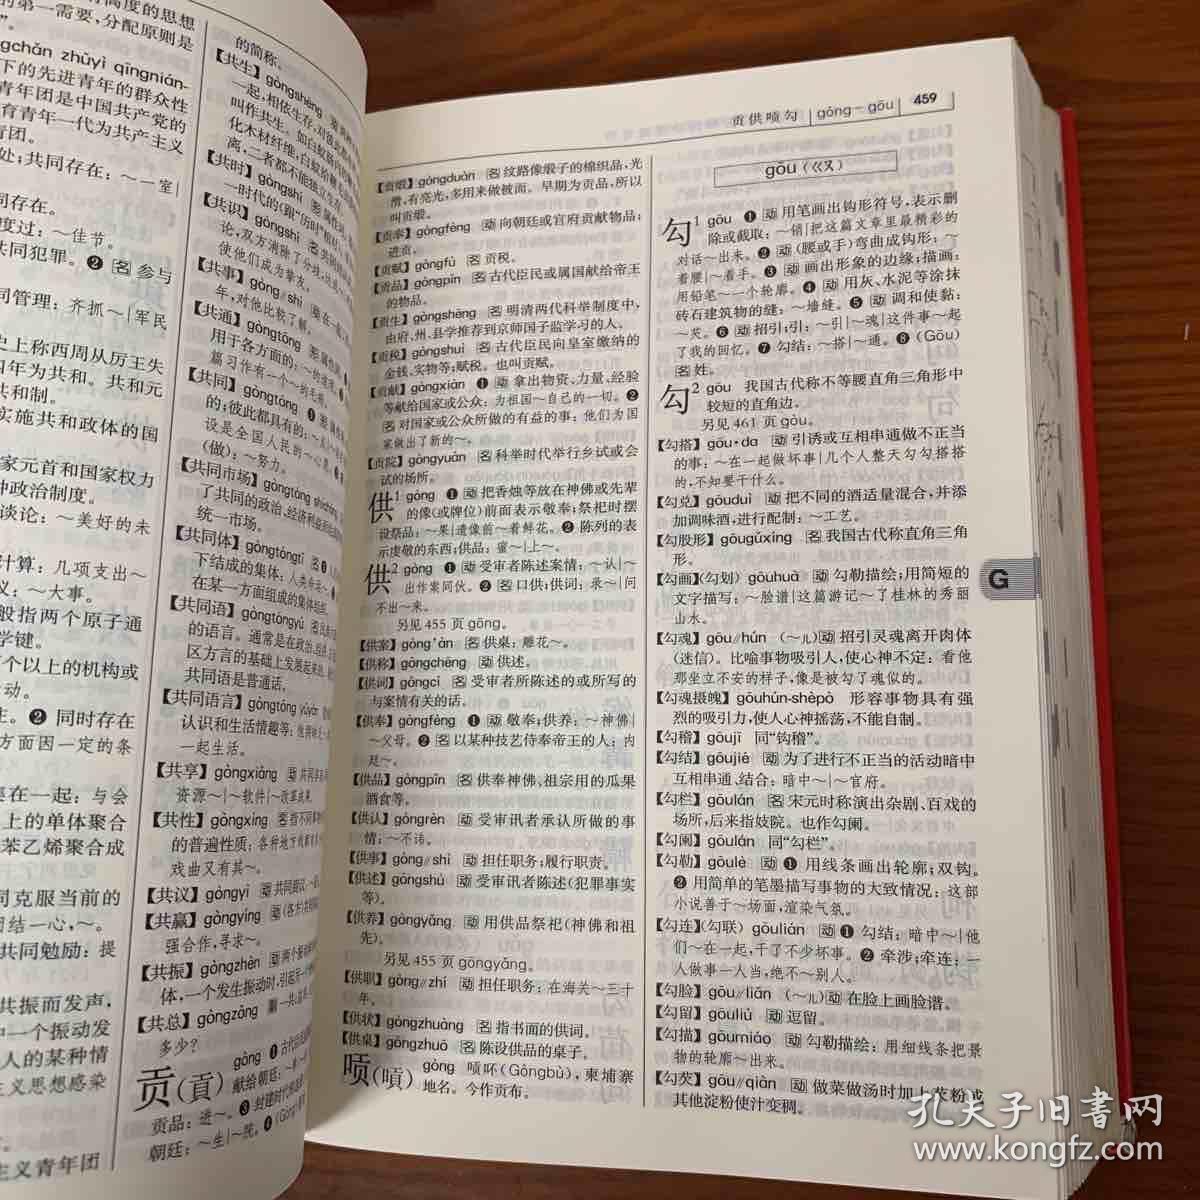 现代汉语词典(第七版)